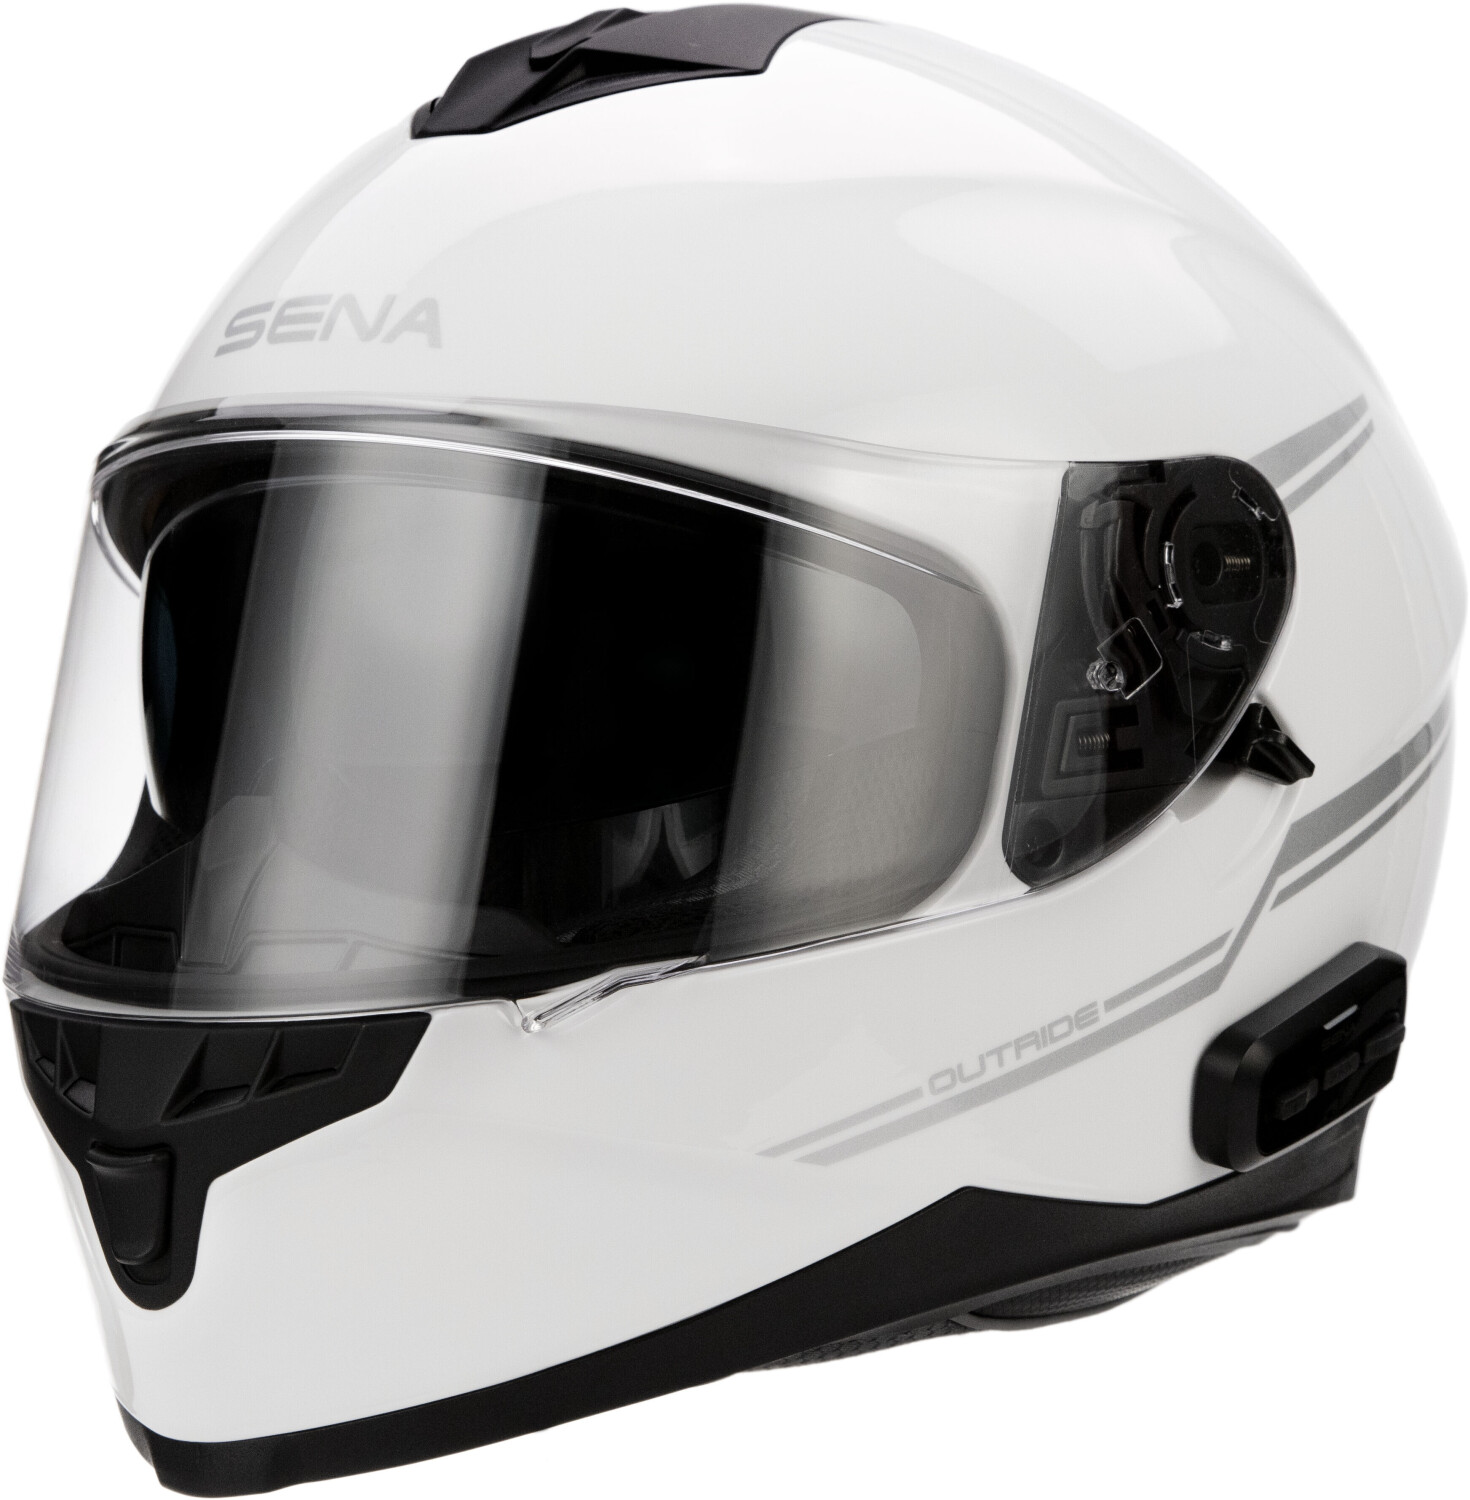 Photos - Motorcycle Helmet Sena Outride white matt 